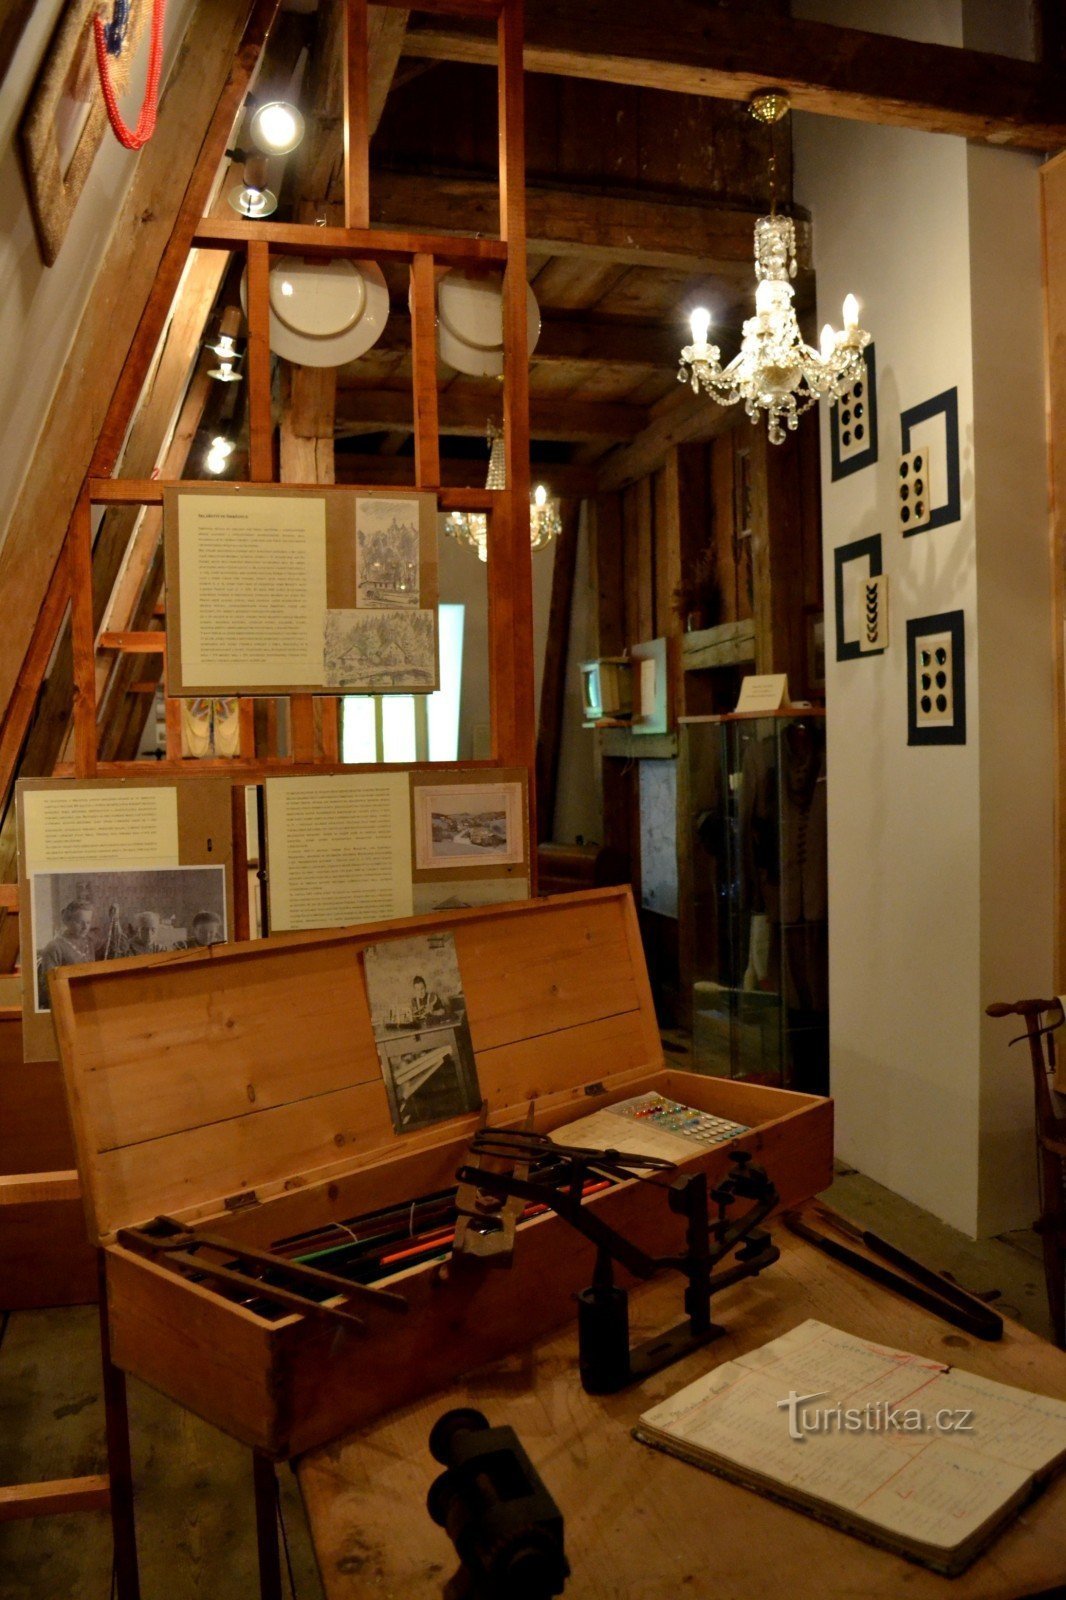 Krajevni muzej in razstavišče Smržovka